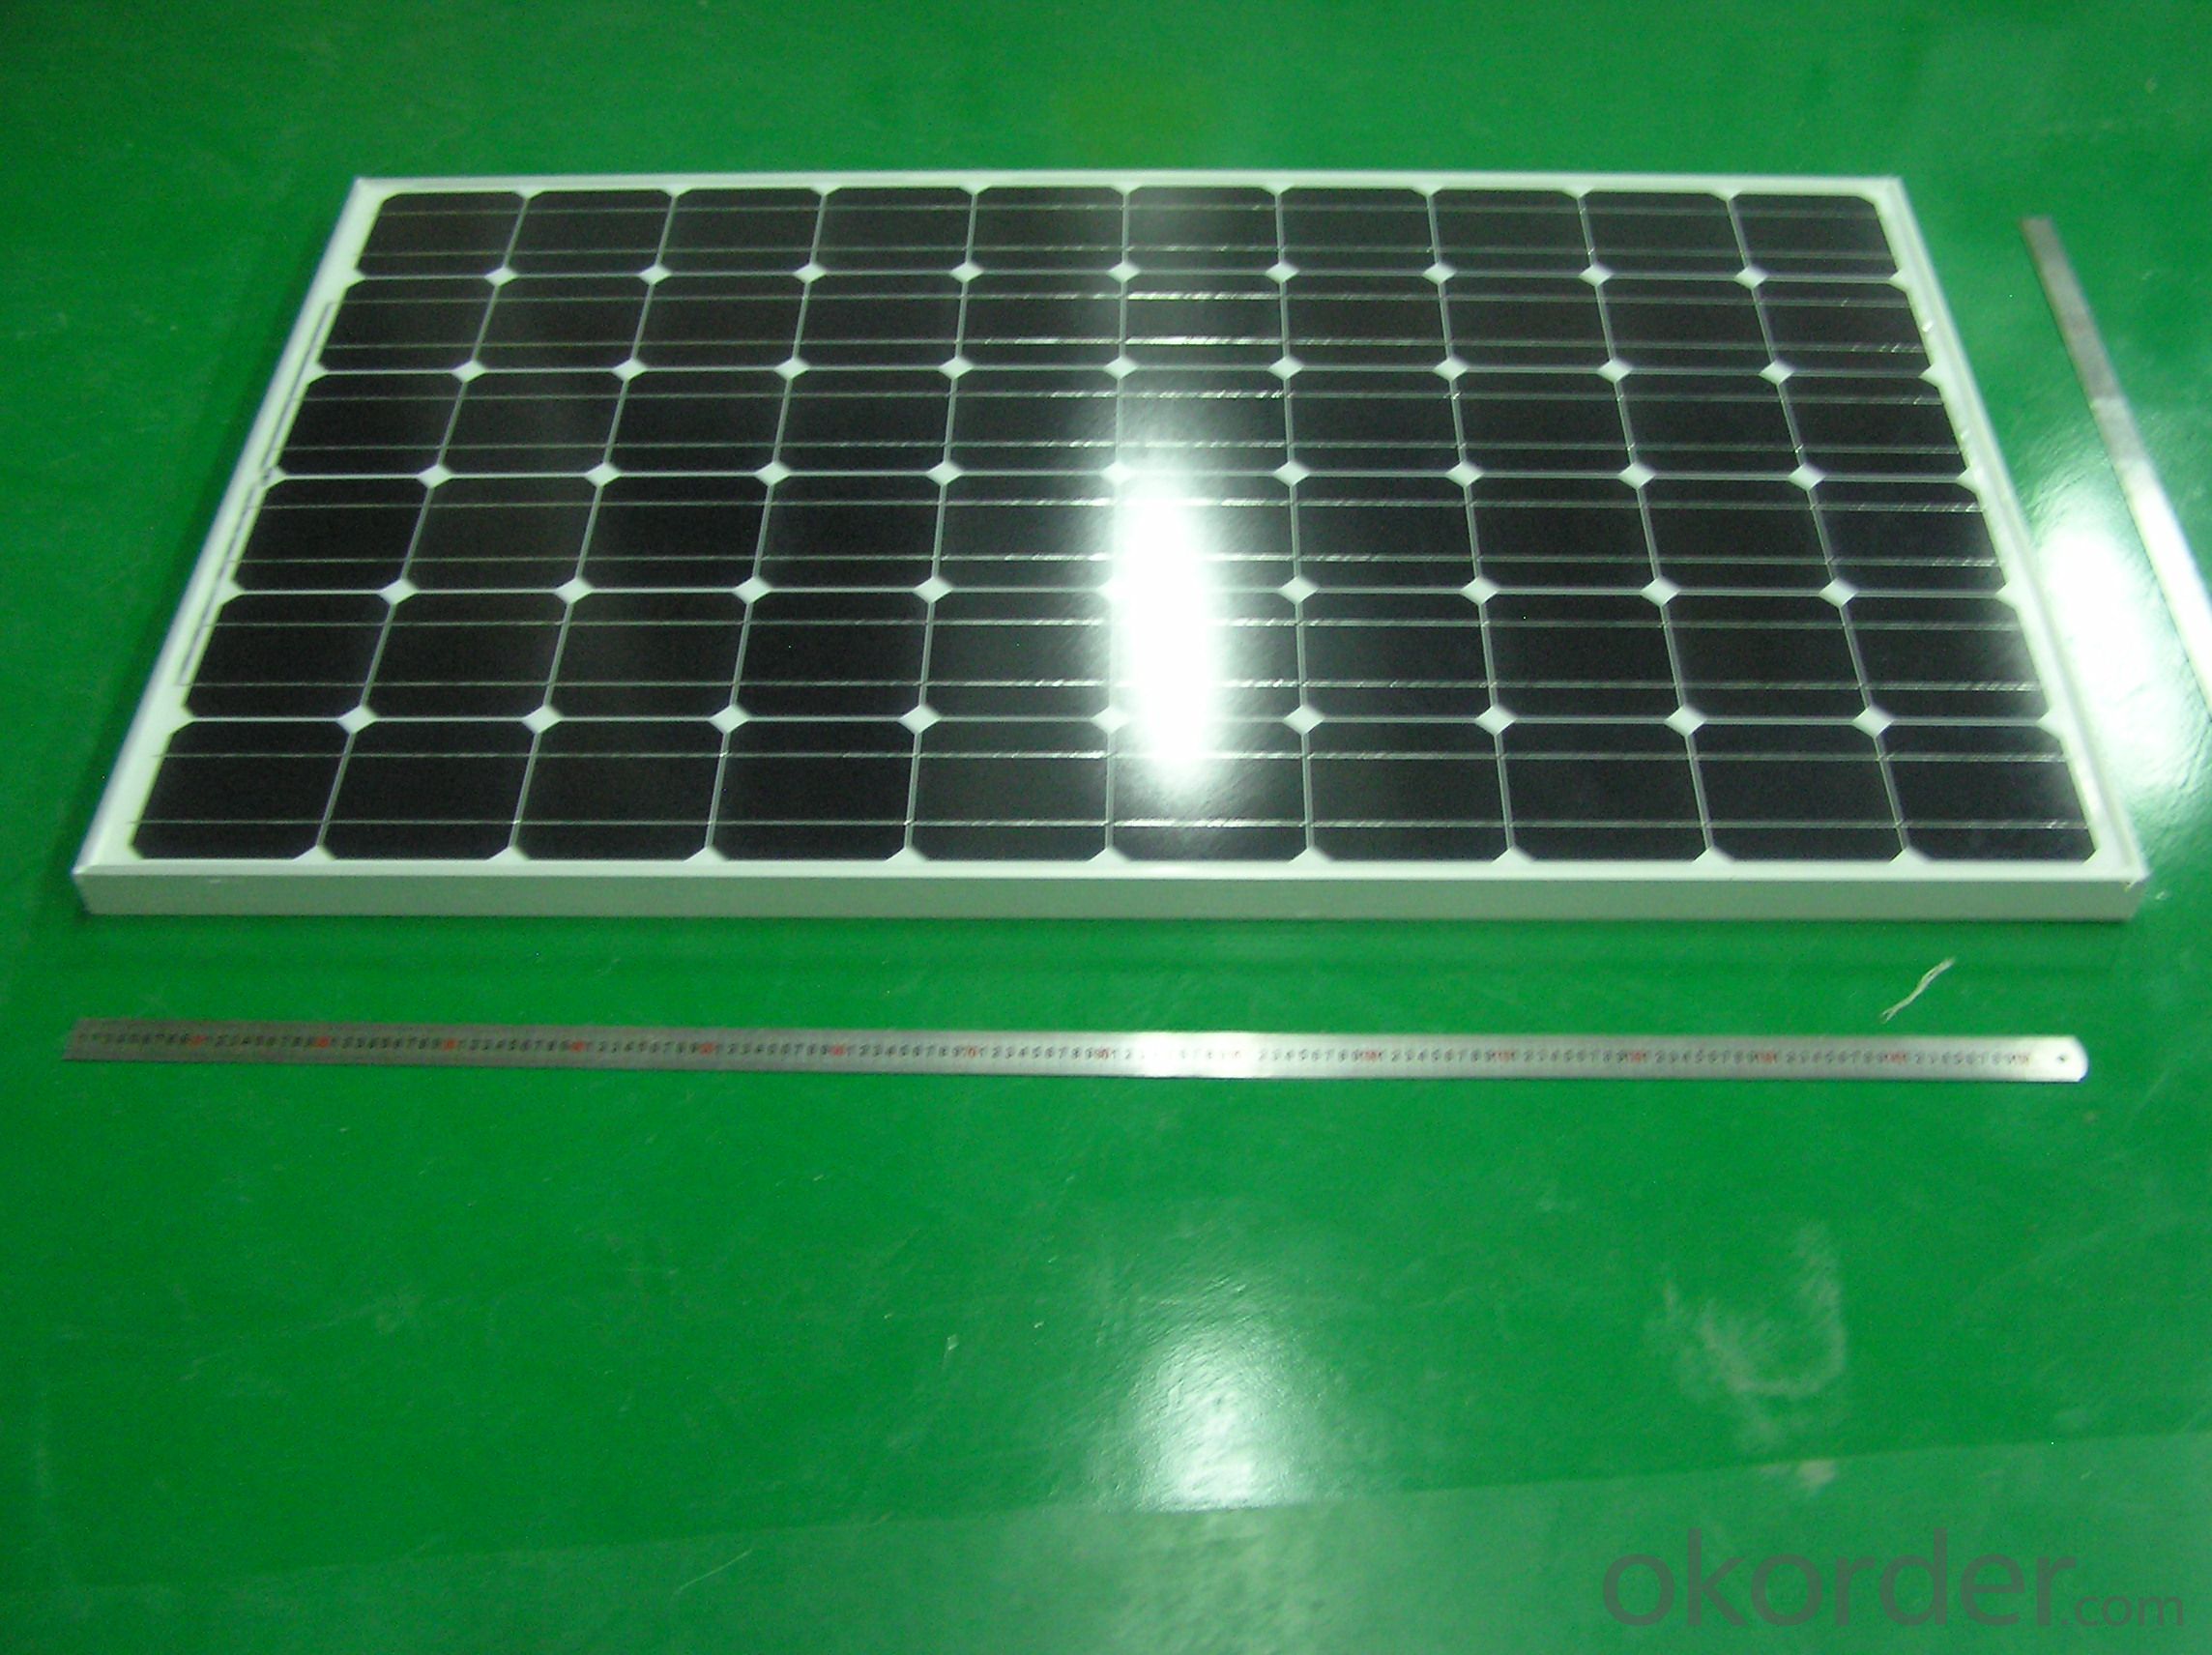 Panel solar con componentes de silicio monocristalino 10W